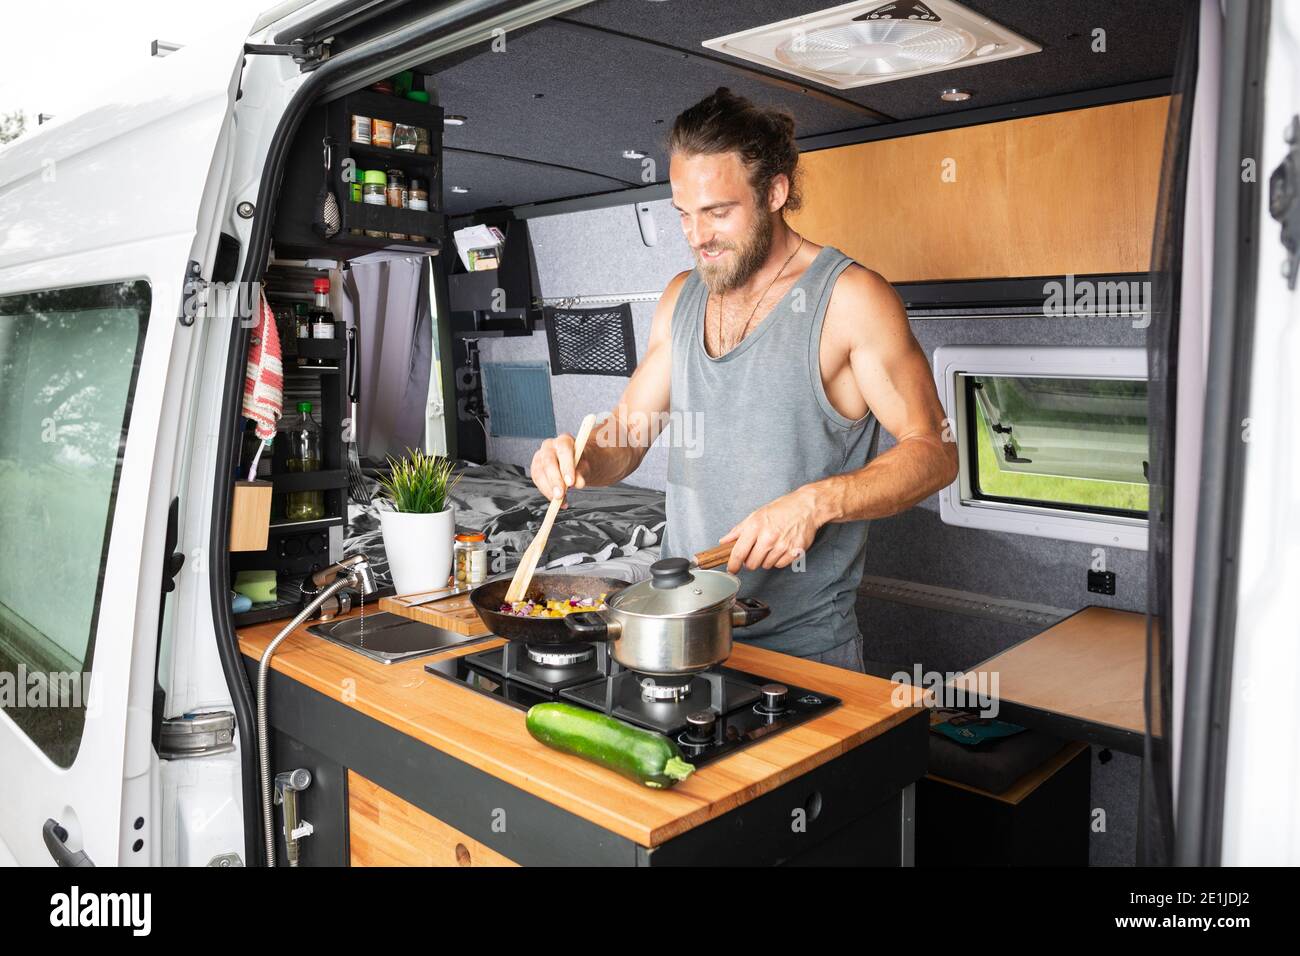 Hombre cocinando en una estufa dentro de su camioneta Foto de stock